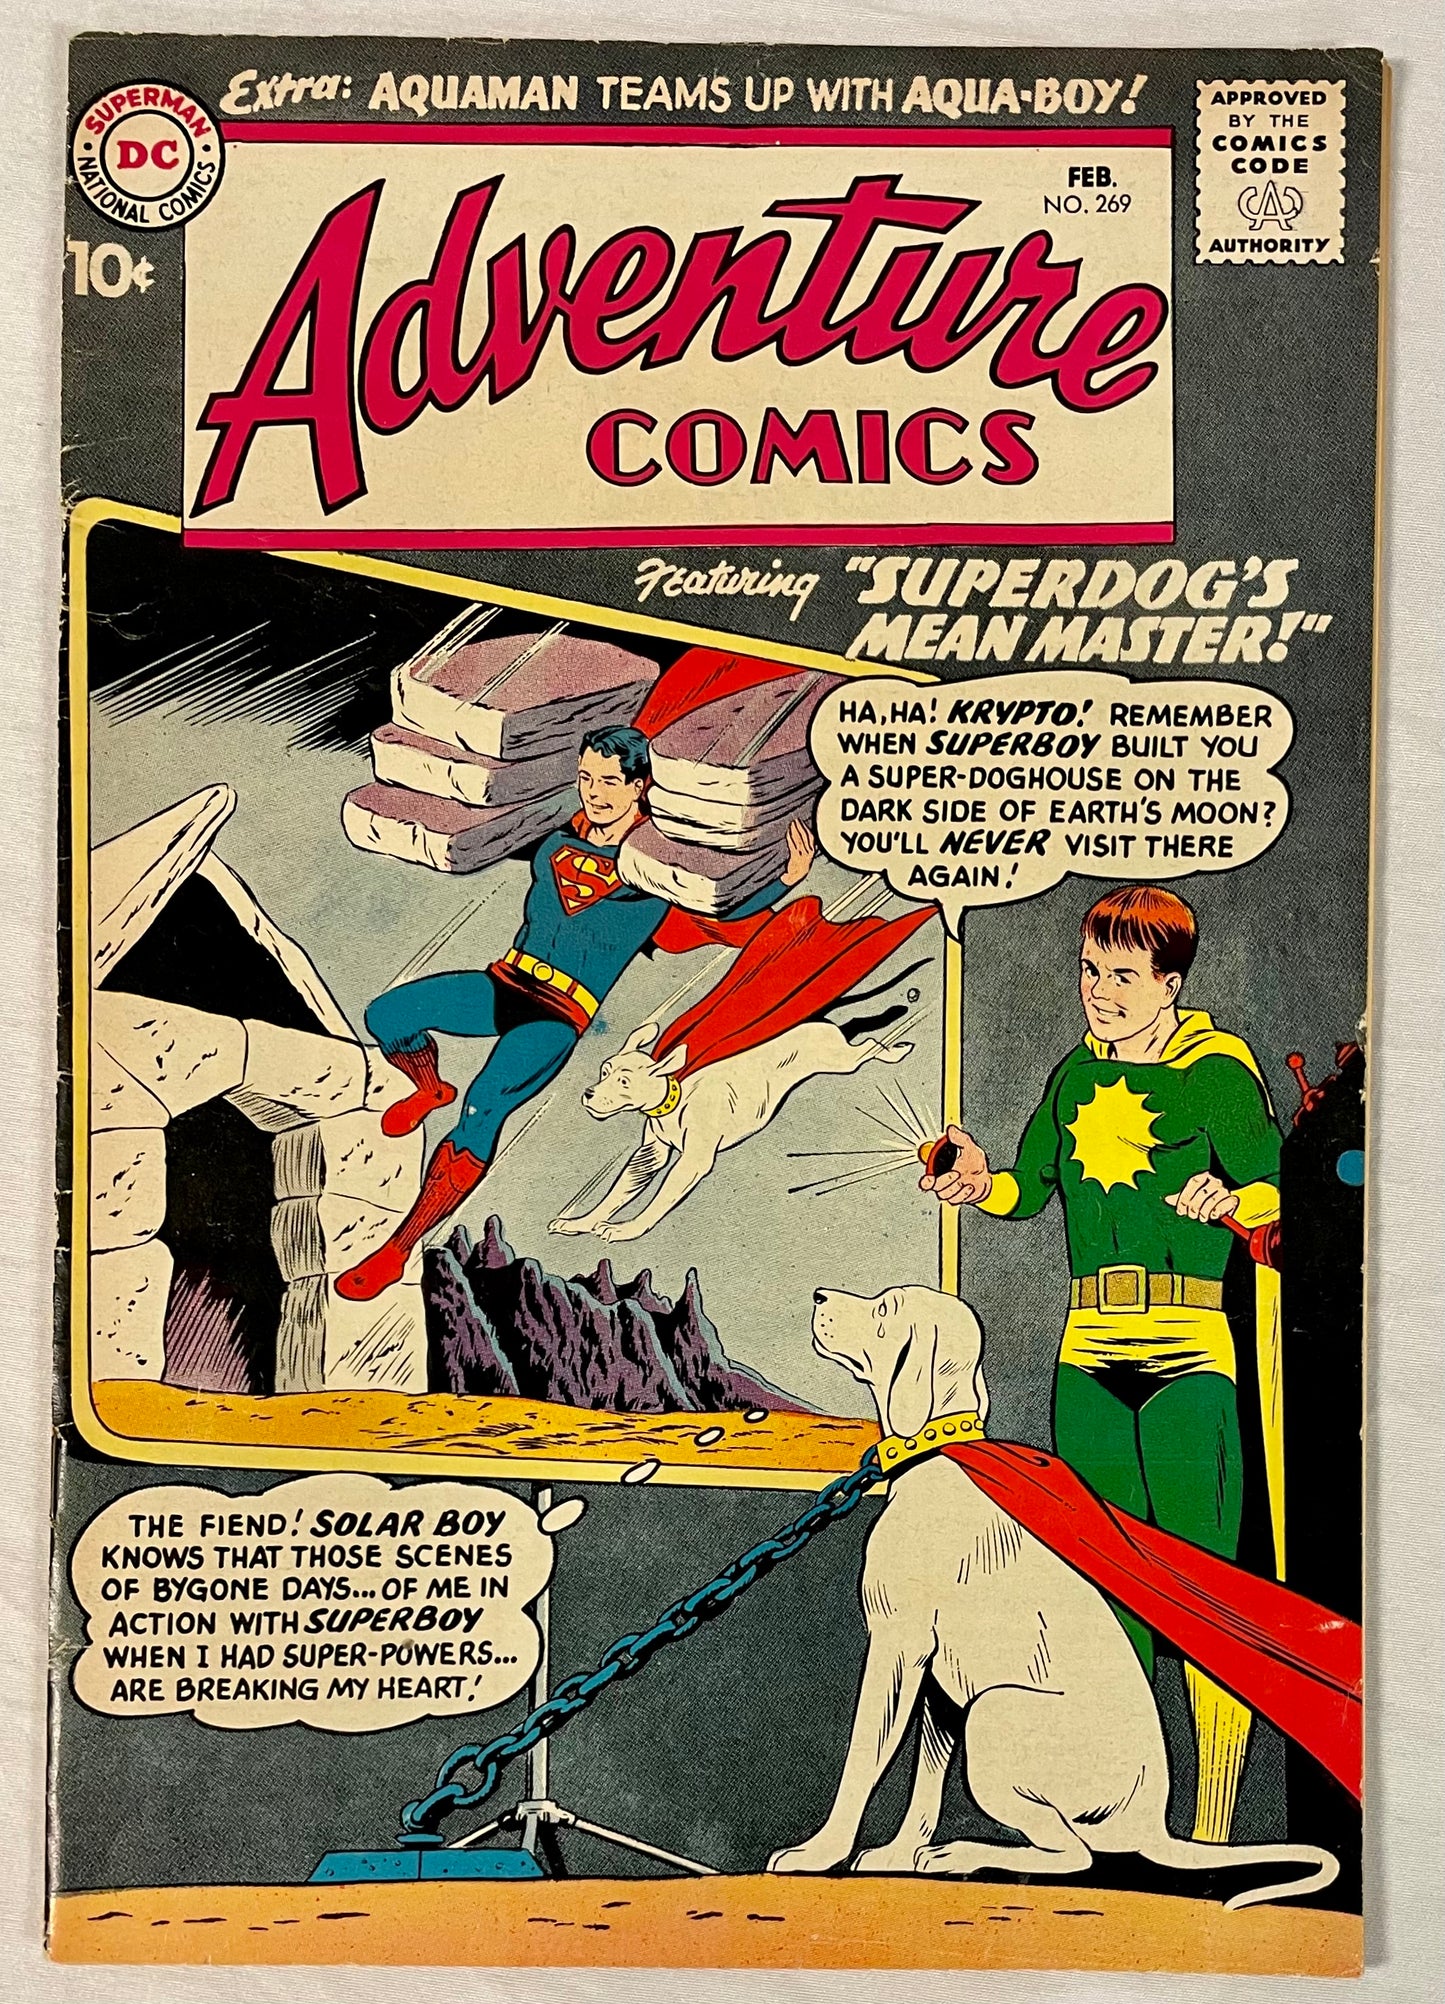 DC Comics Adventure Comics No. 269